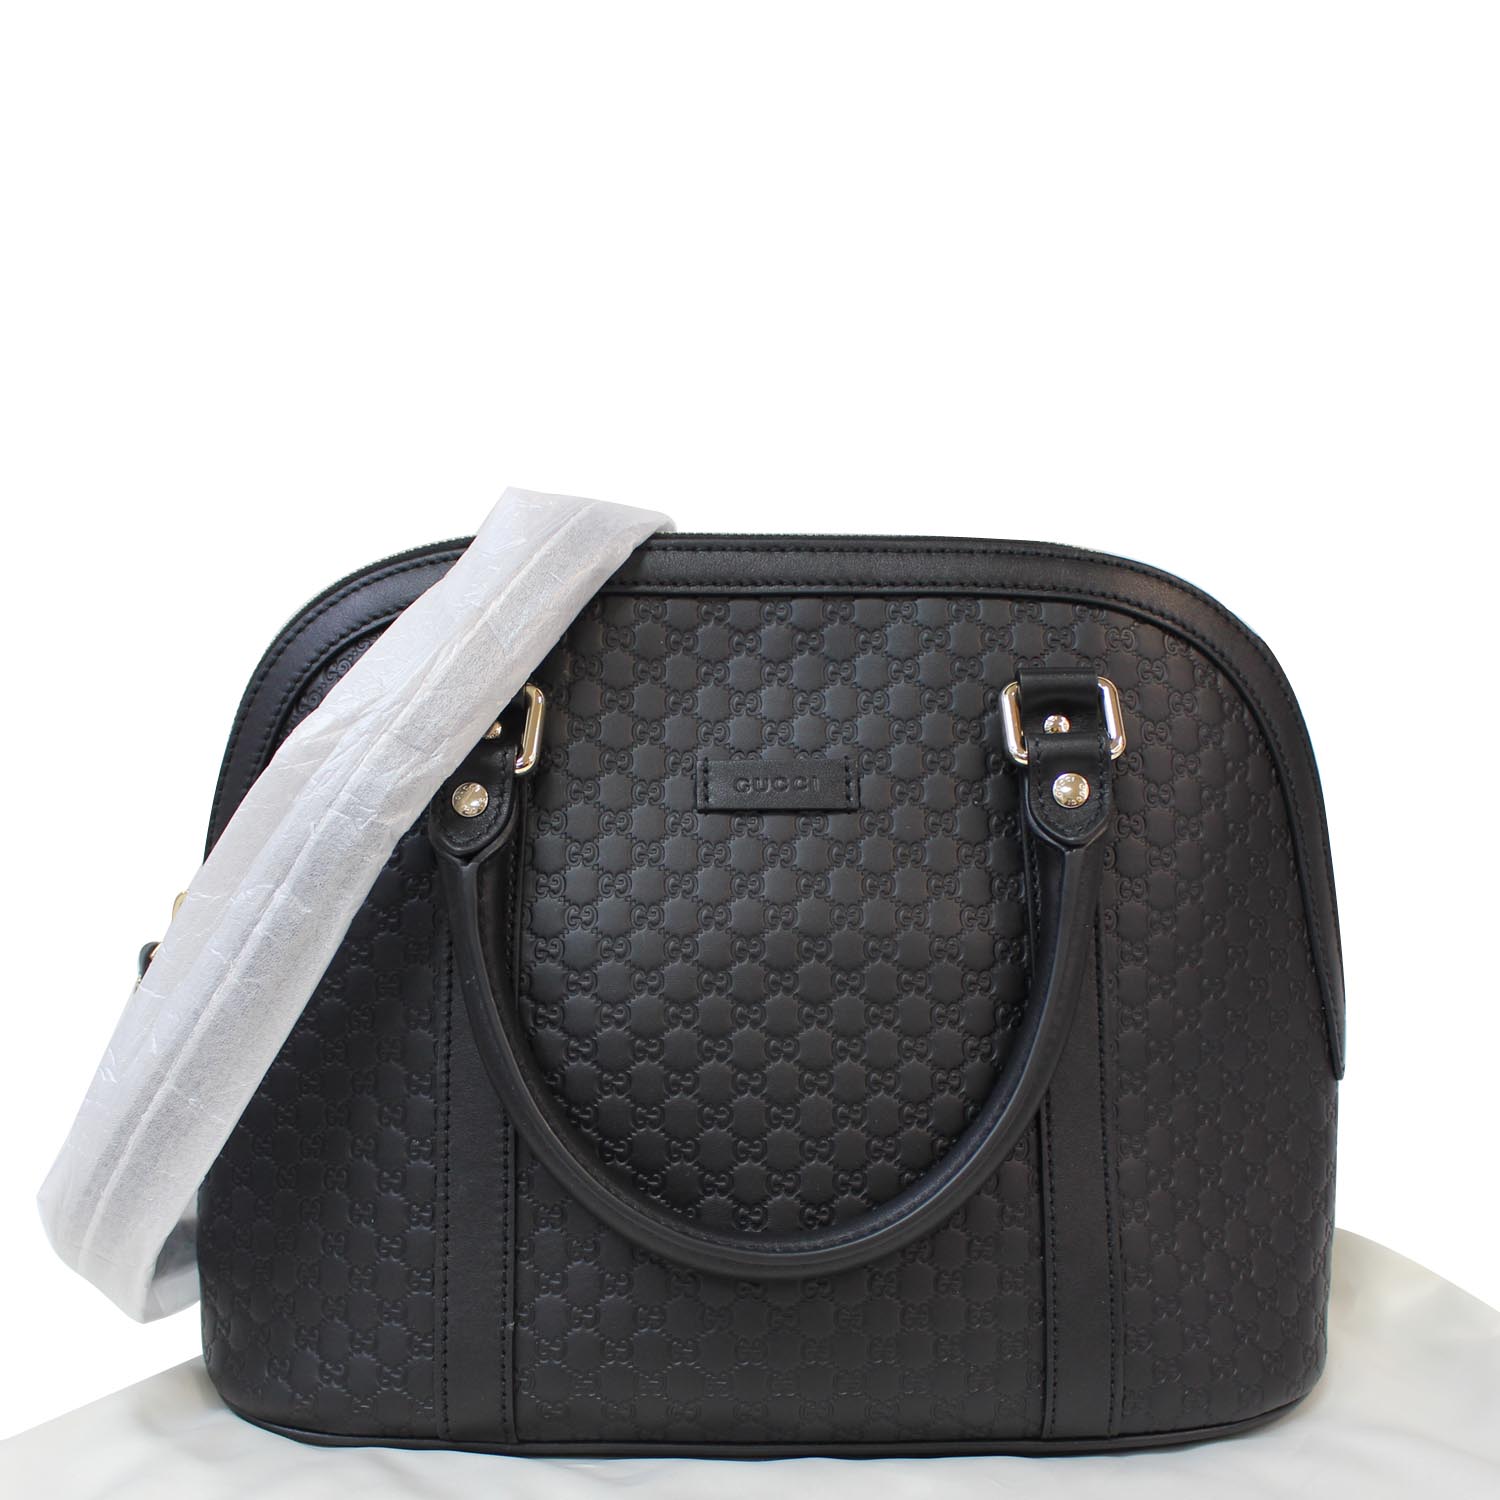 Gucci Black Microguccissima Leather Mini Dome Bag 449654BMJ1G-1000